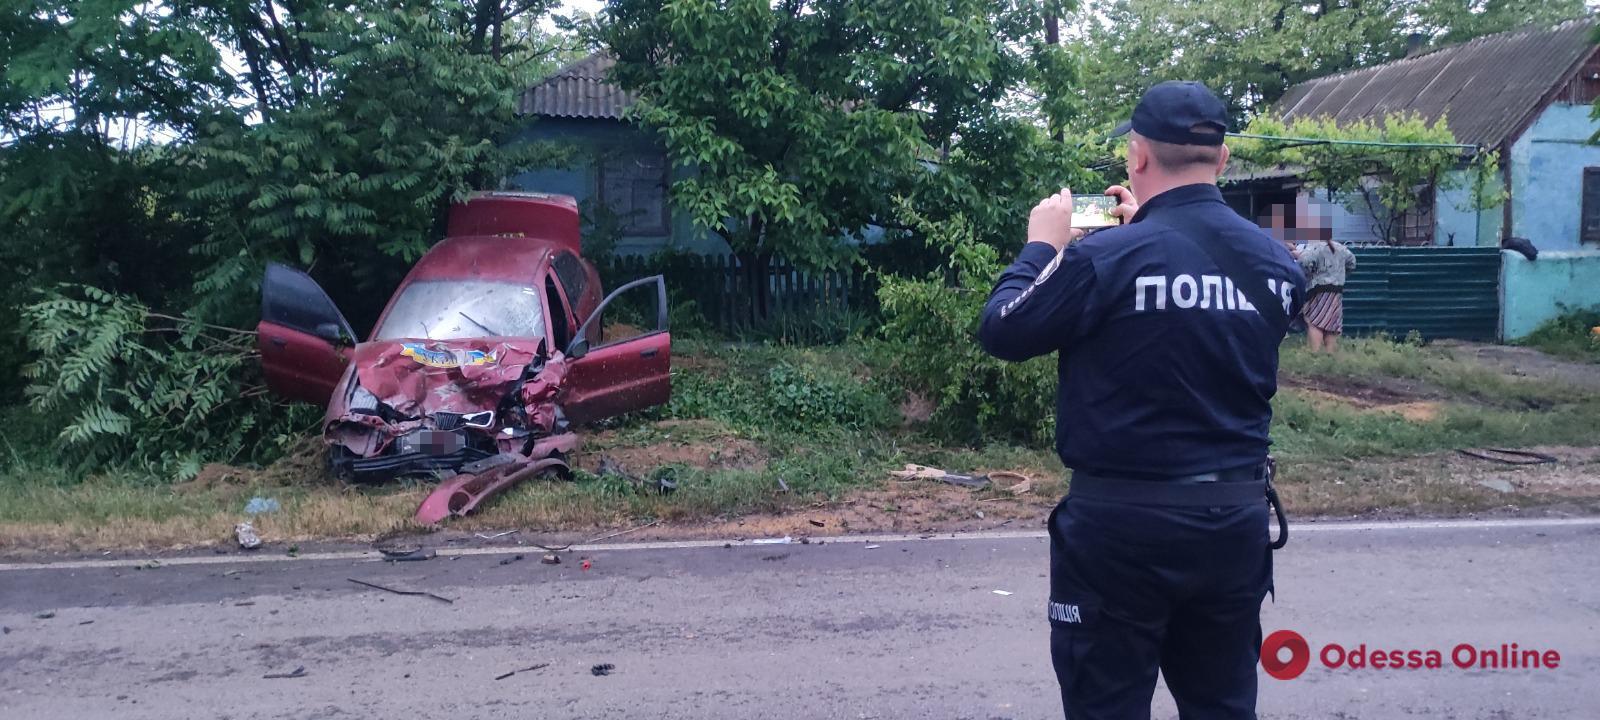 В Одесской области полицейский вытянул потерявшего сознание парня из горящего авто